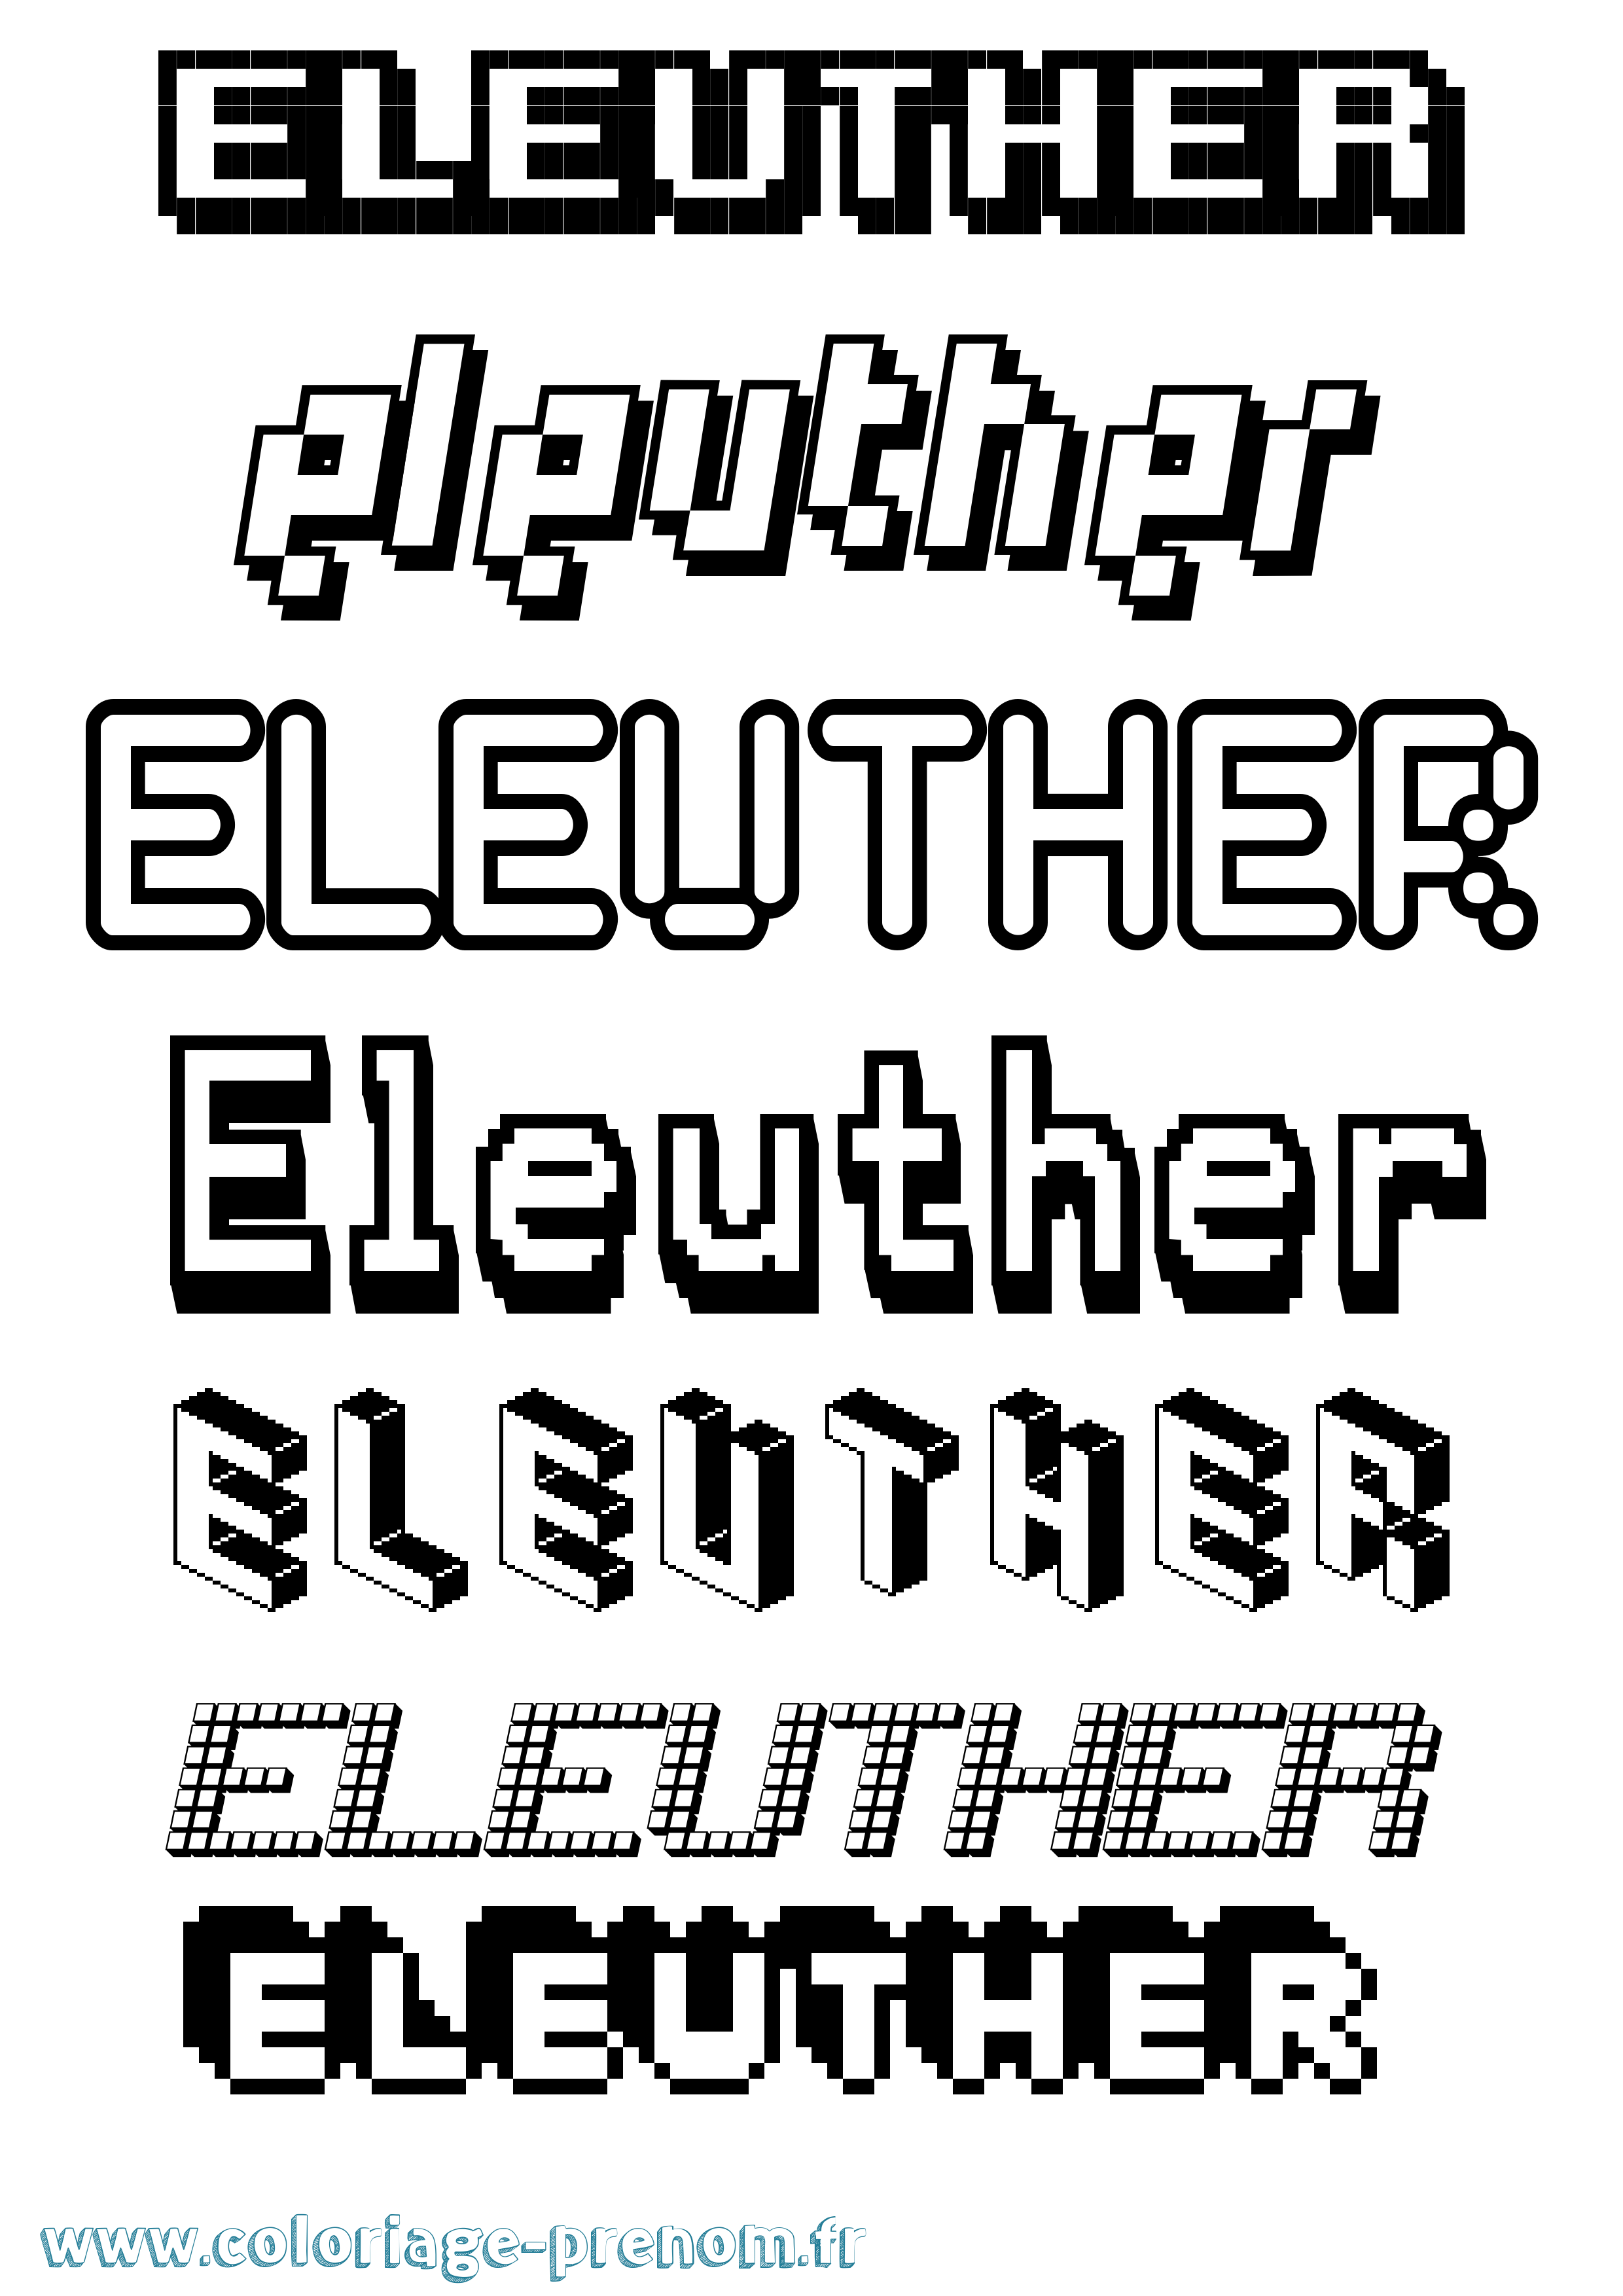 Coloriage prénom Eleuther Pixel